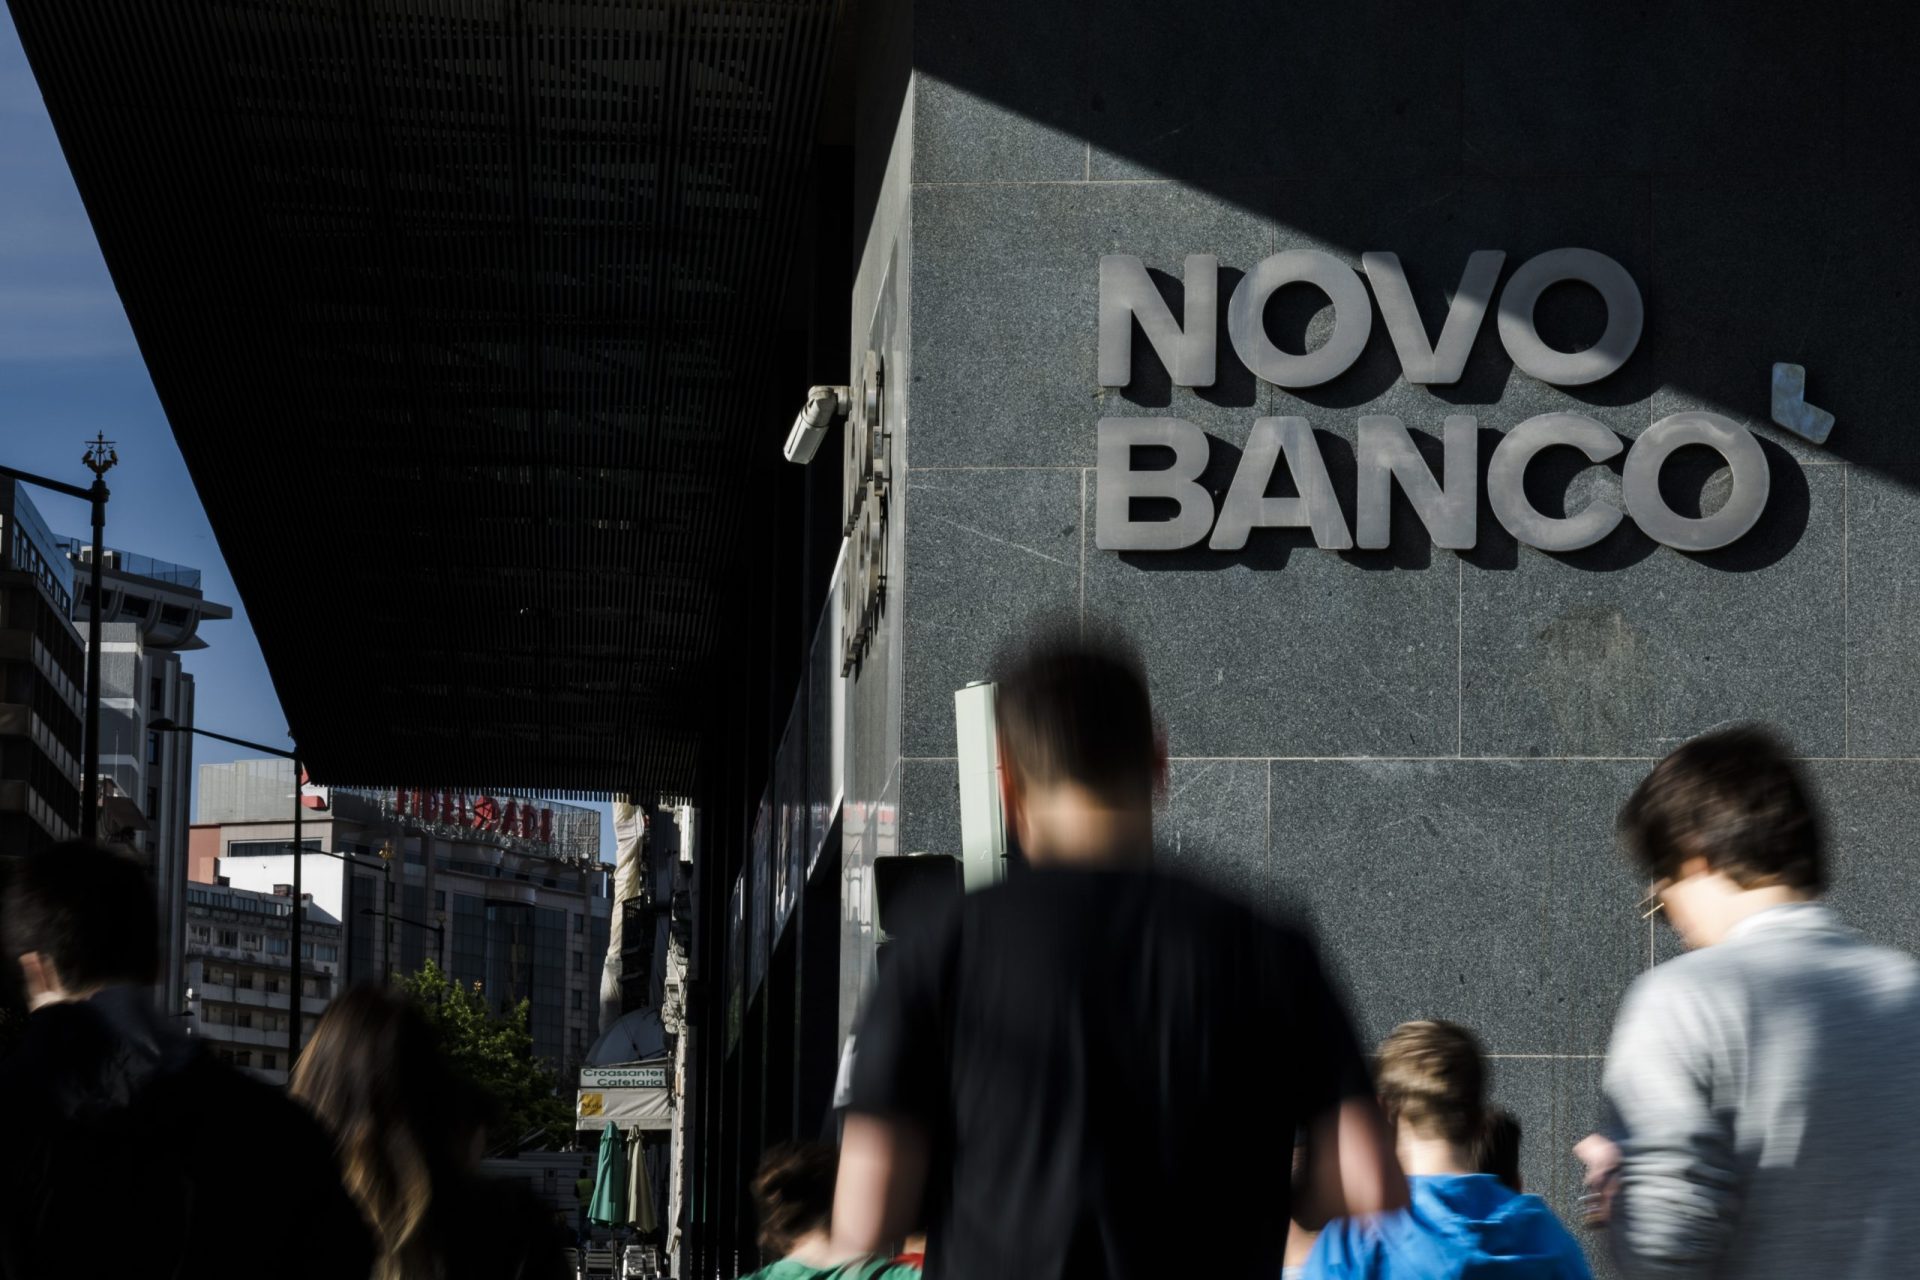 Venda do Novo Banco estará concluída até novembro